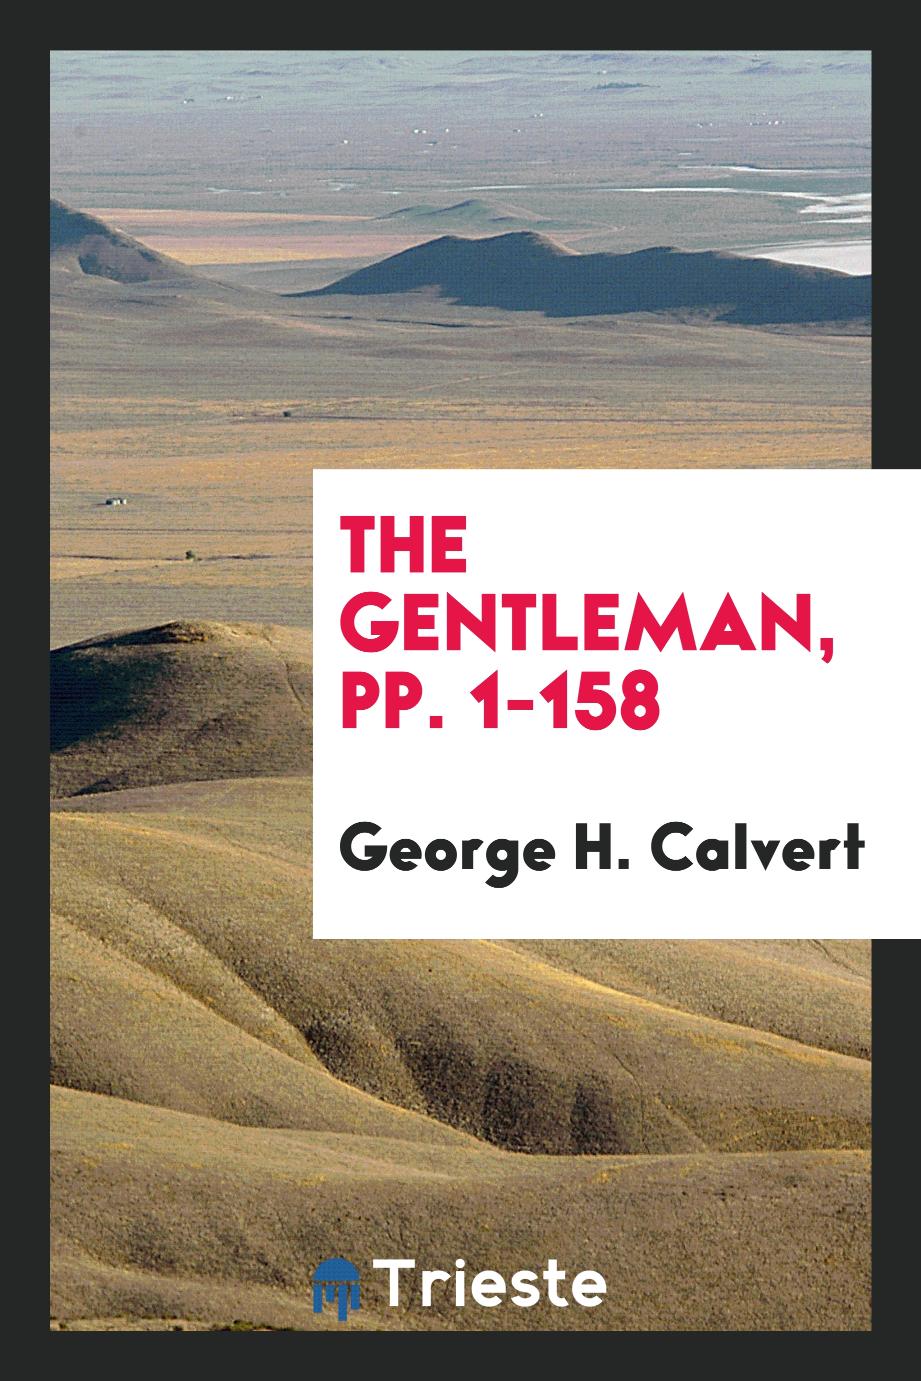 The Gentleman, pp. 1-158